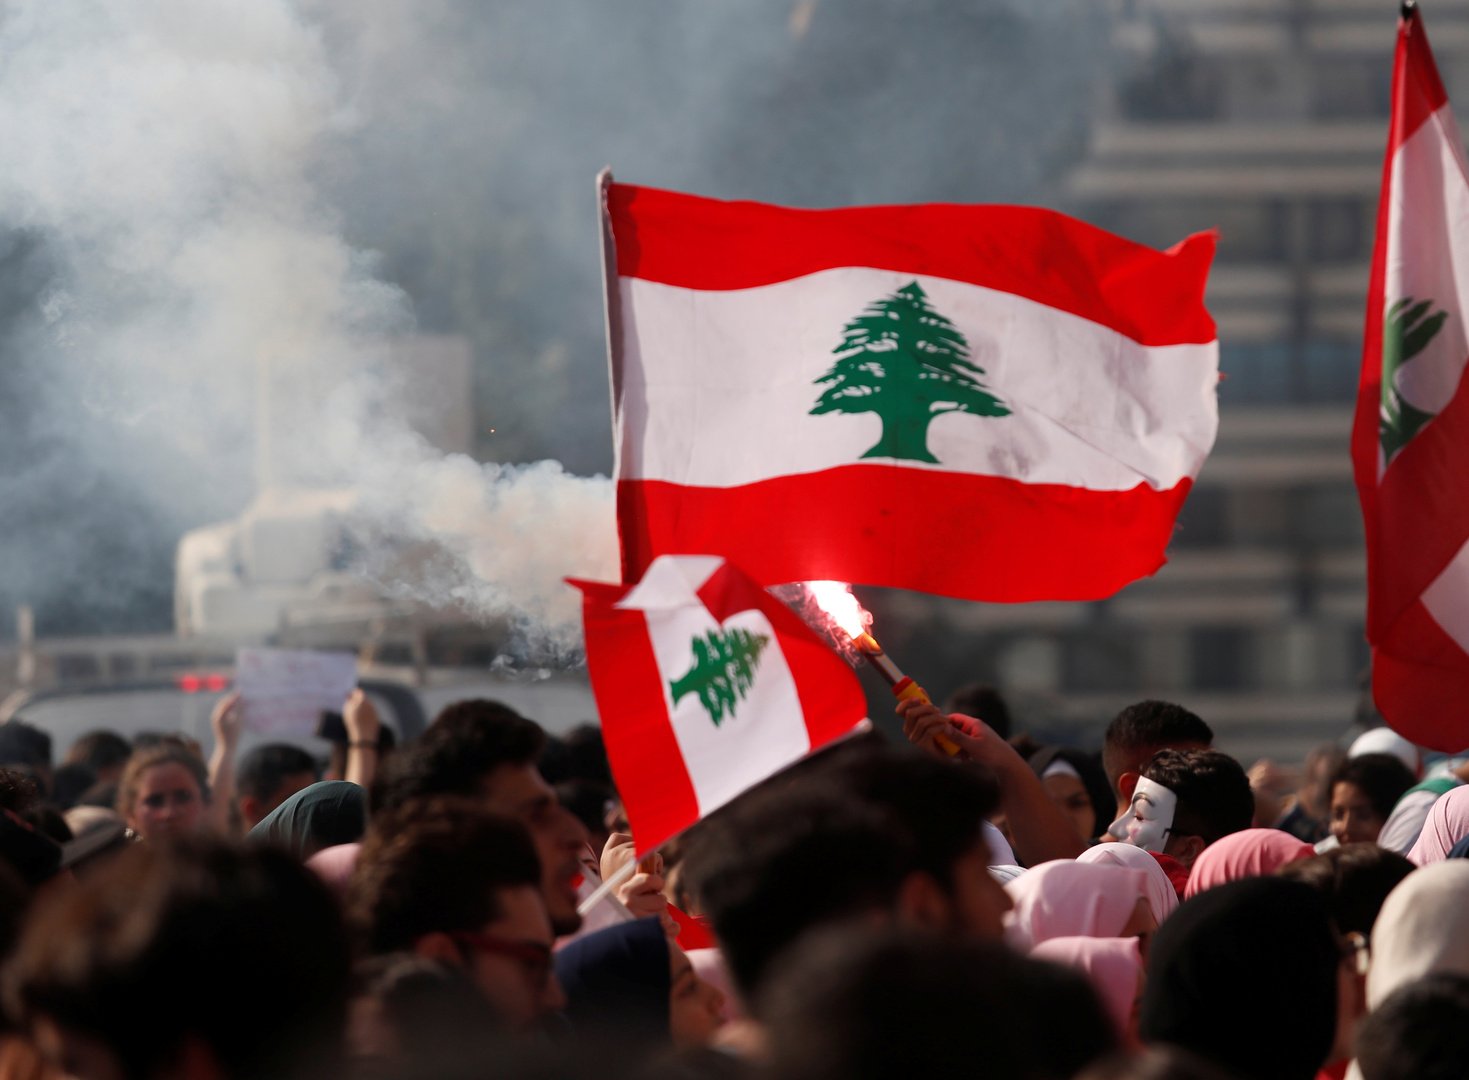 البنك الدولي: الوضع في لبنان يصبح أكثر خطورة